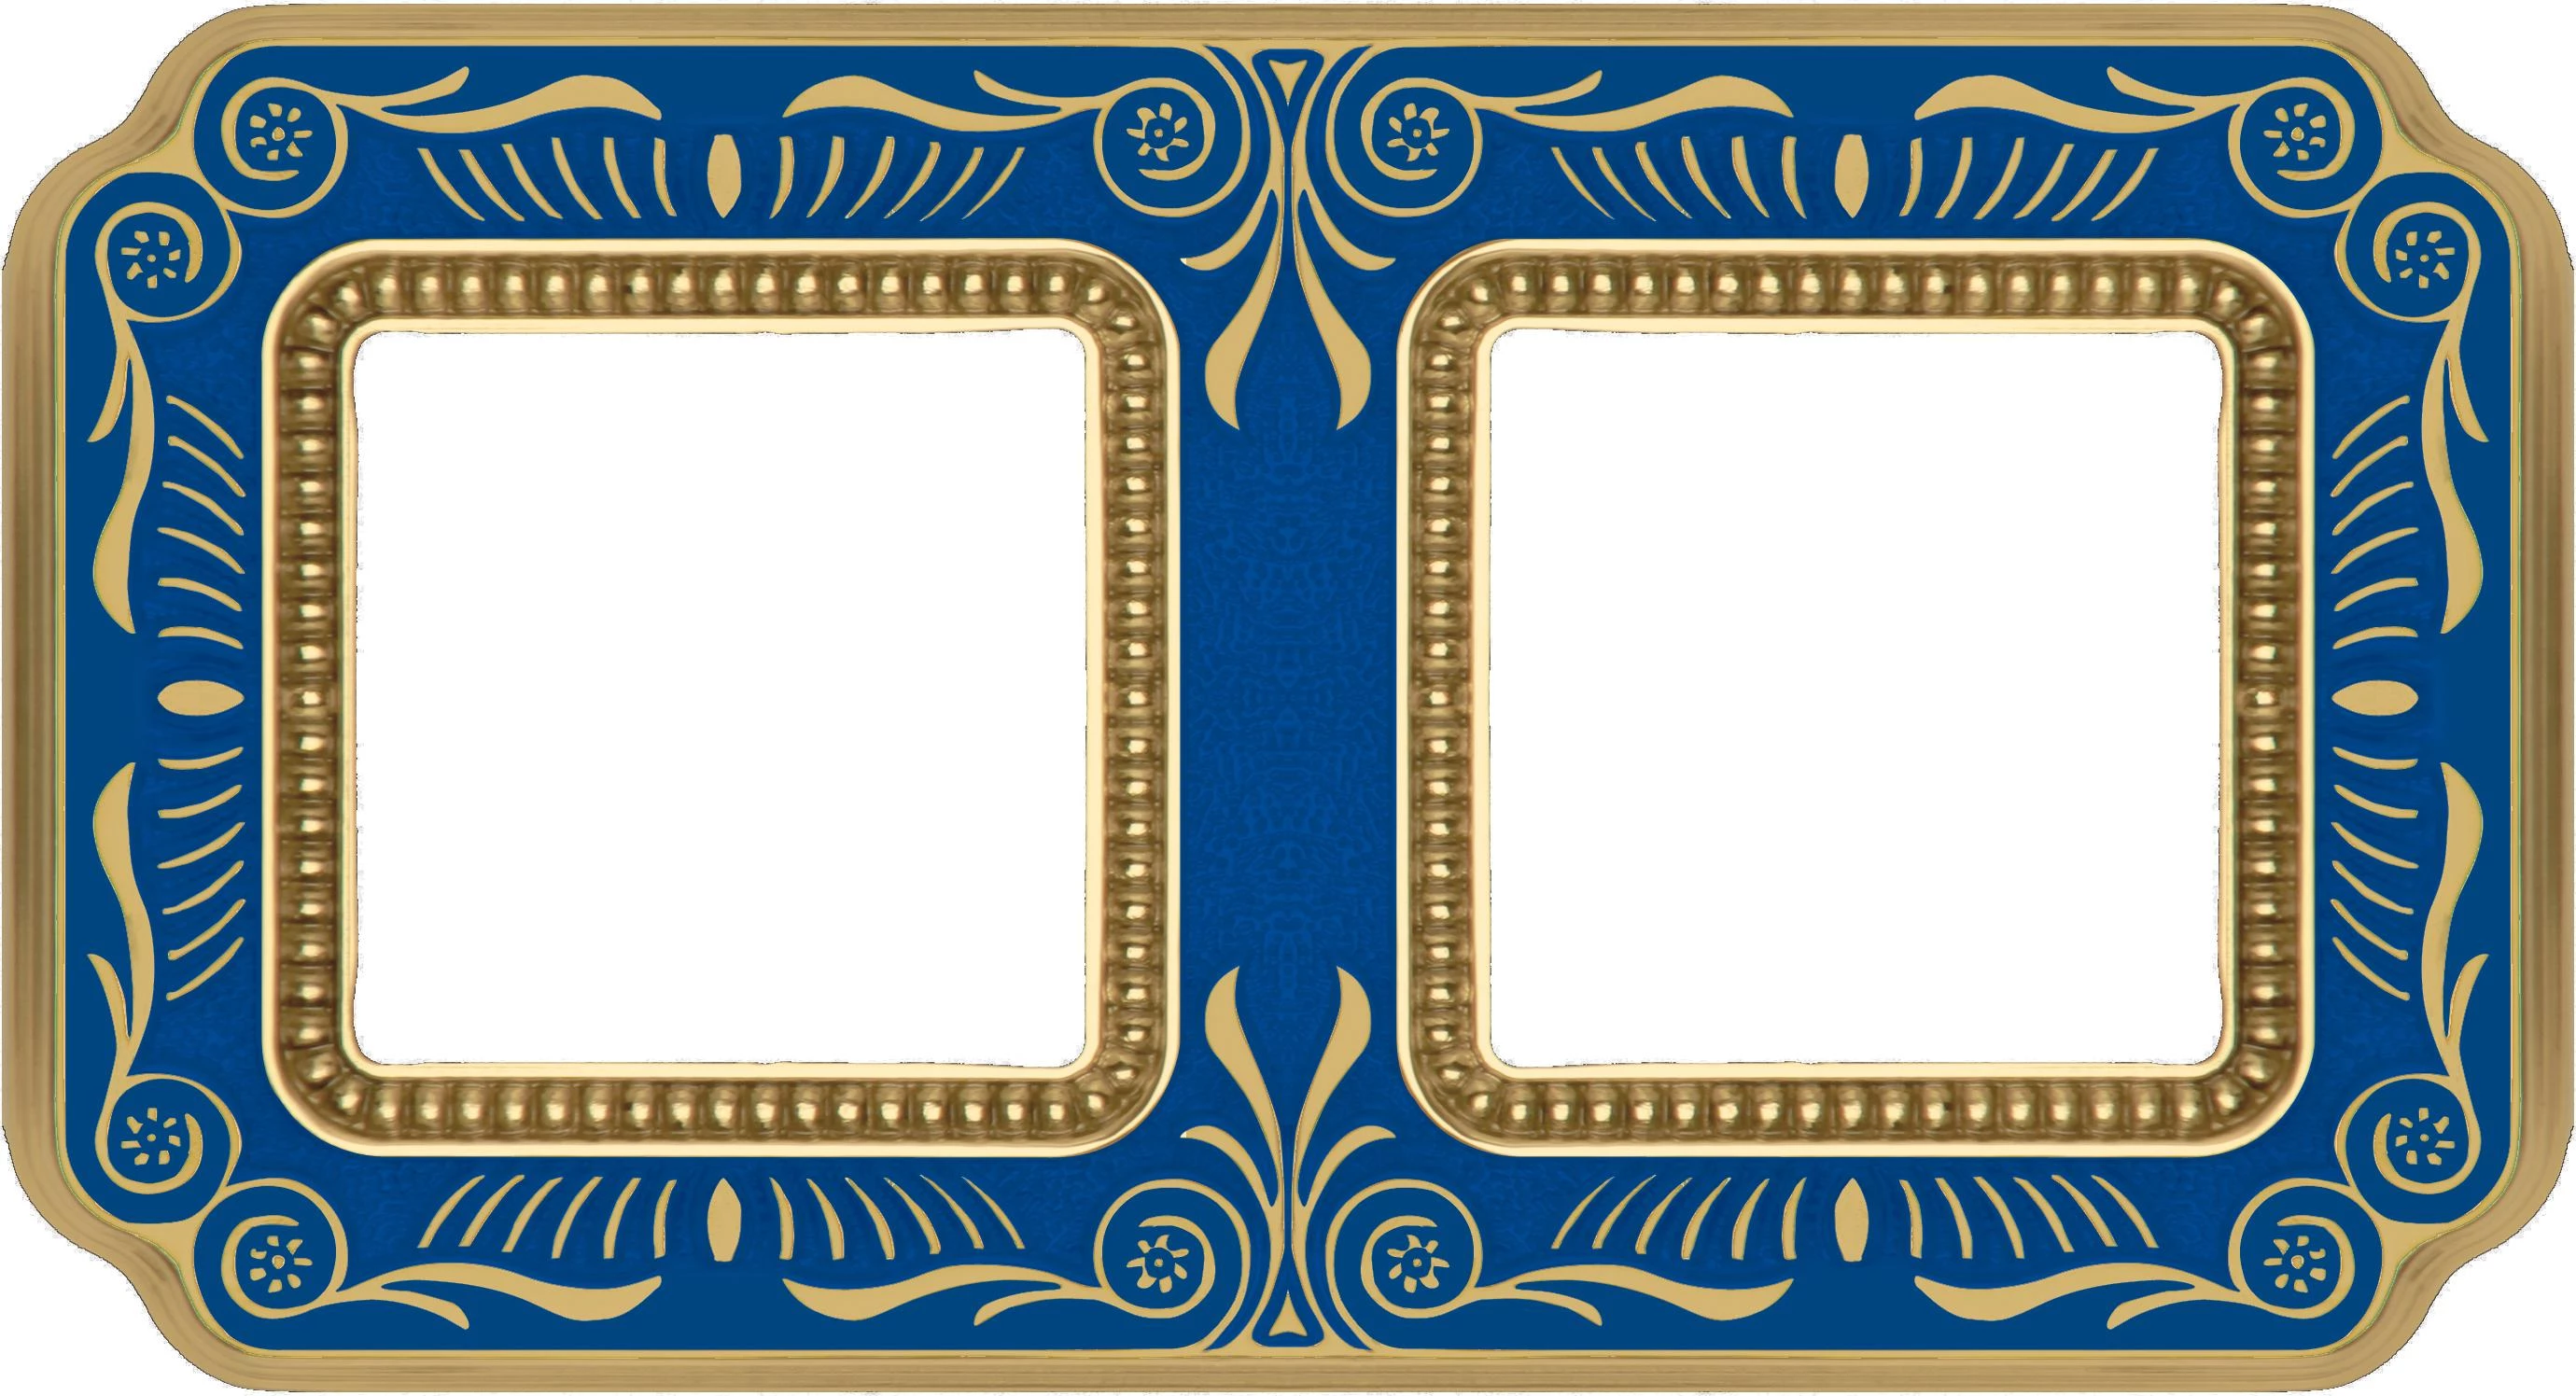  артикул FD01362AZEN название Рамка 2-ая (двойная), цвет Голубой сапфир, TOSCANA FIRENZE, Fede